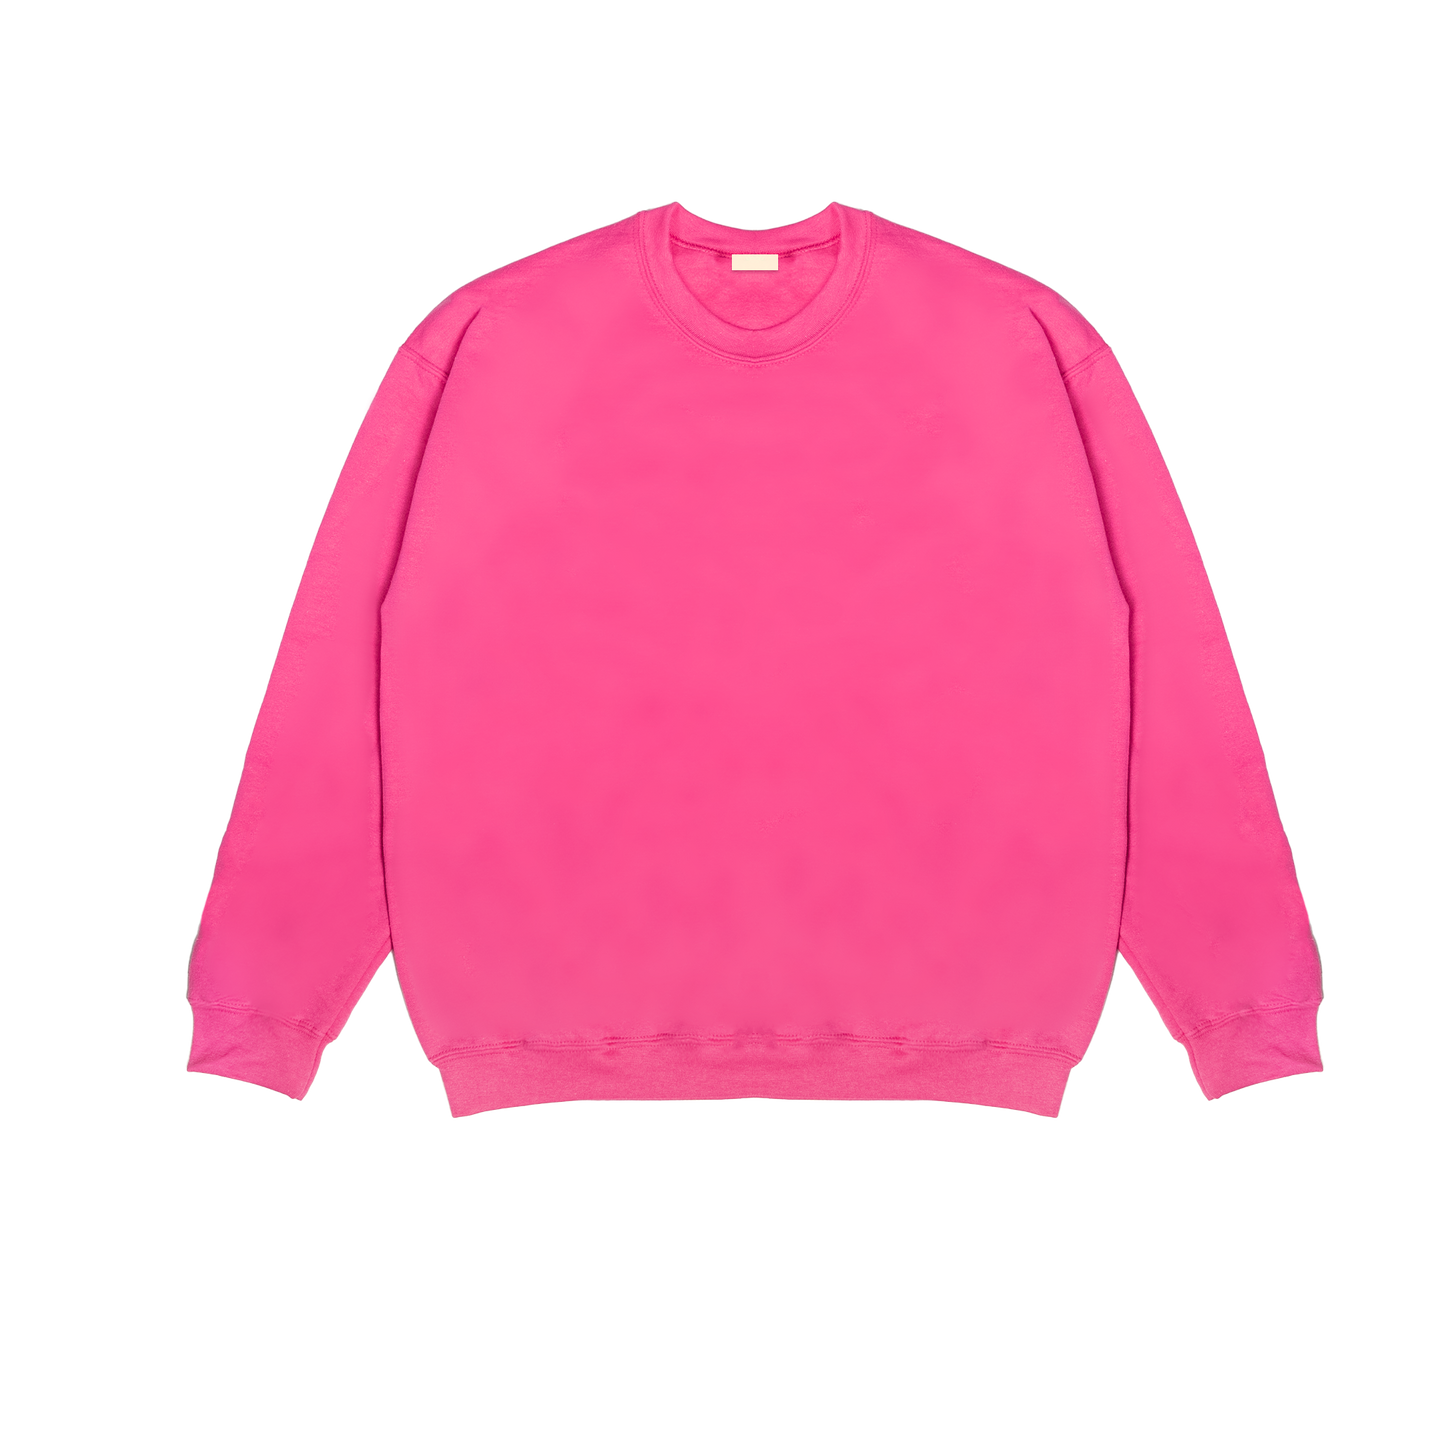 Lotus Sweater